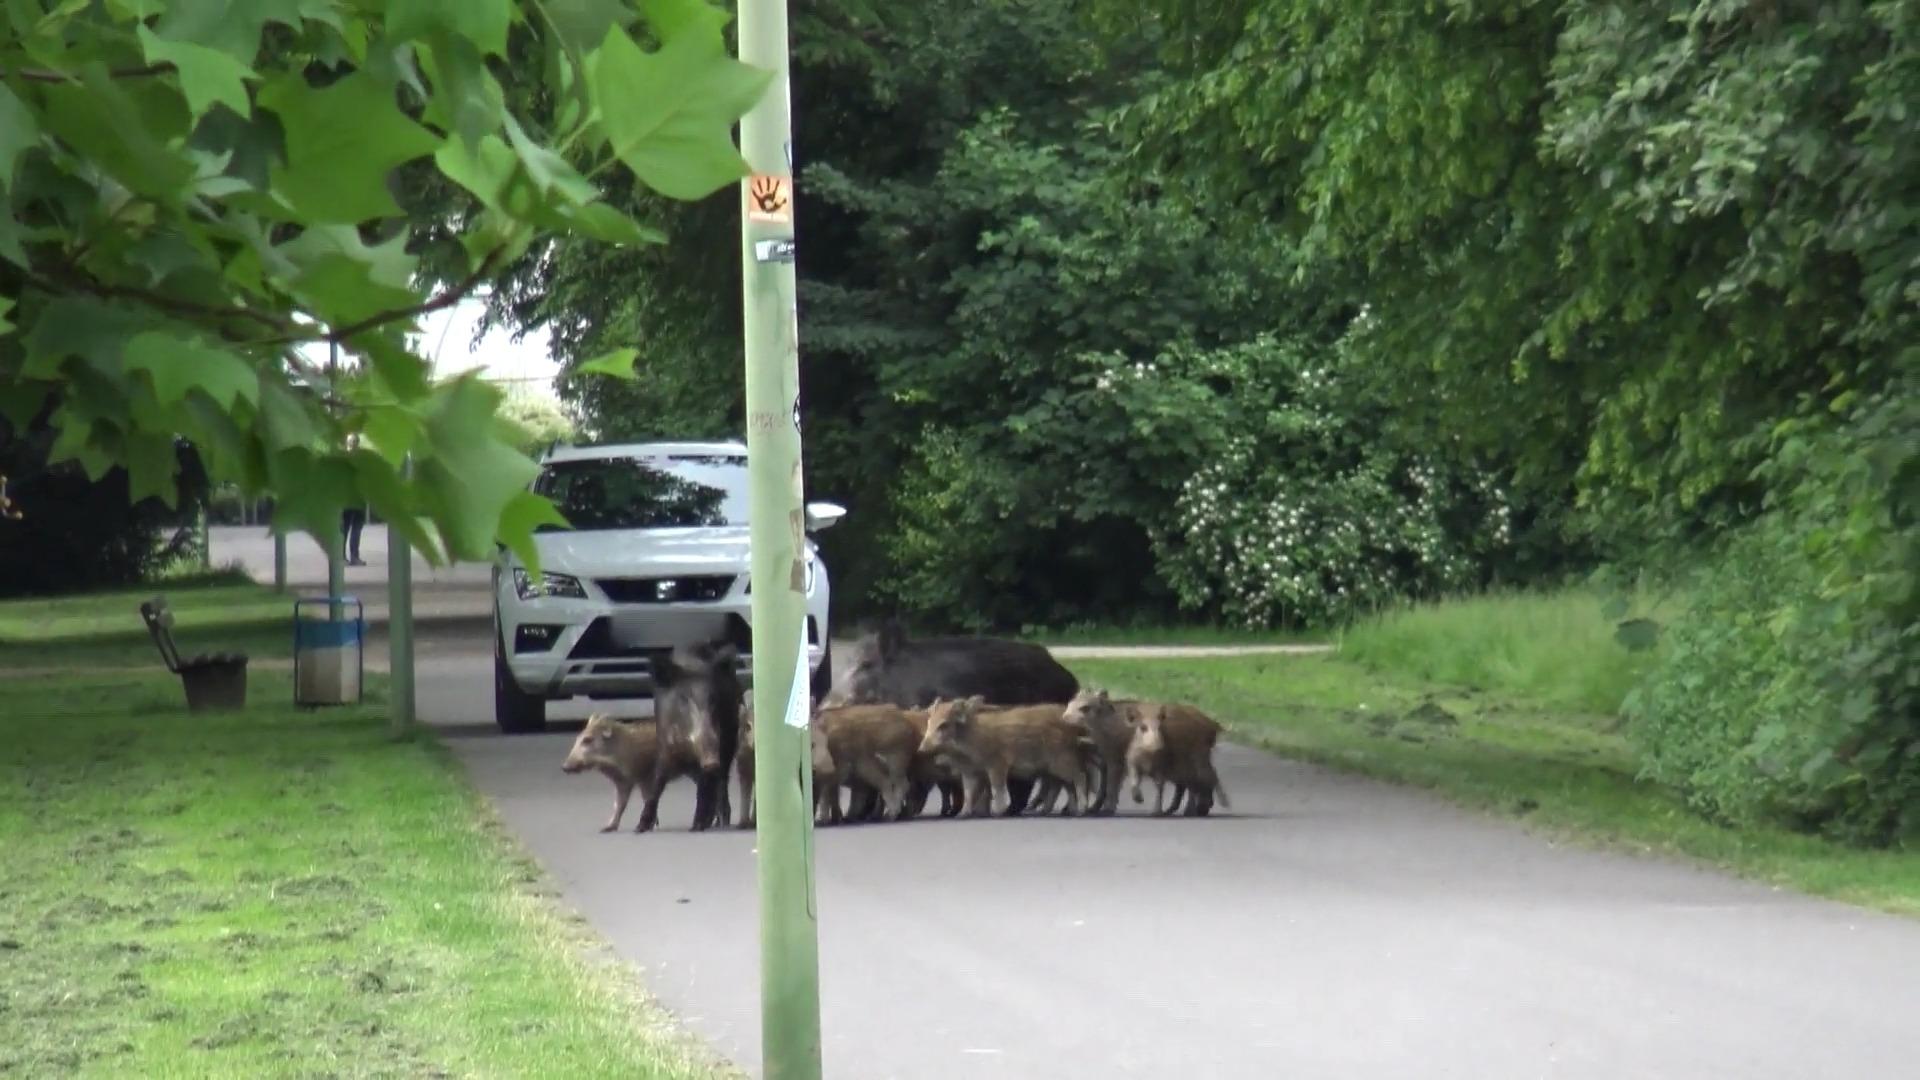 Polizei riegelt Park ab: Arbeiter auf Spielgeräte geflohen Wildschwein-Alarm in Hagen!